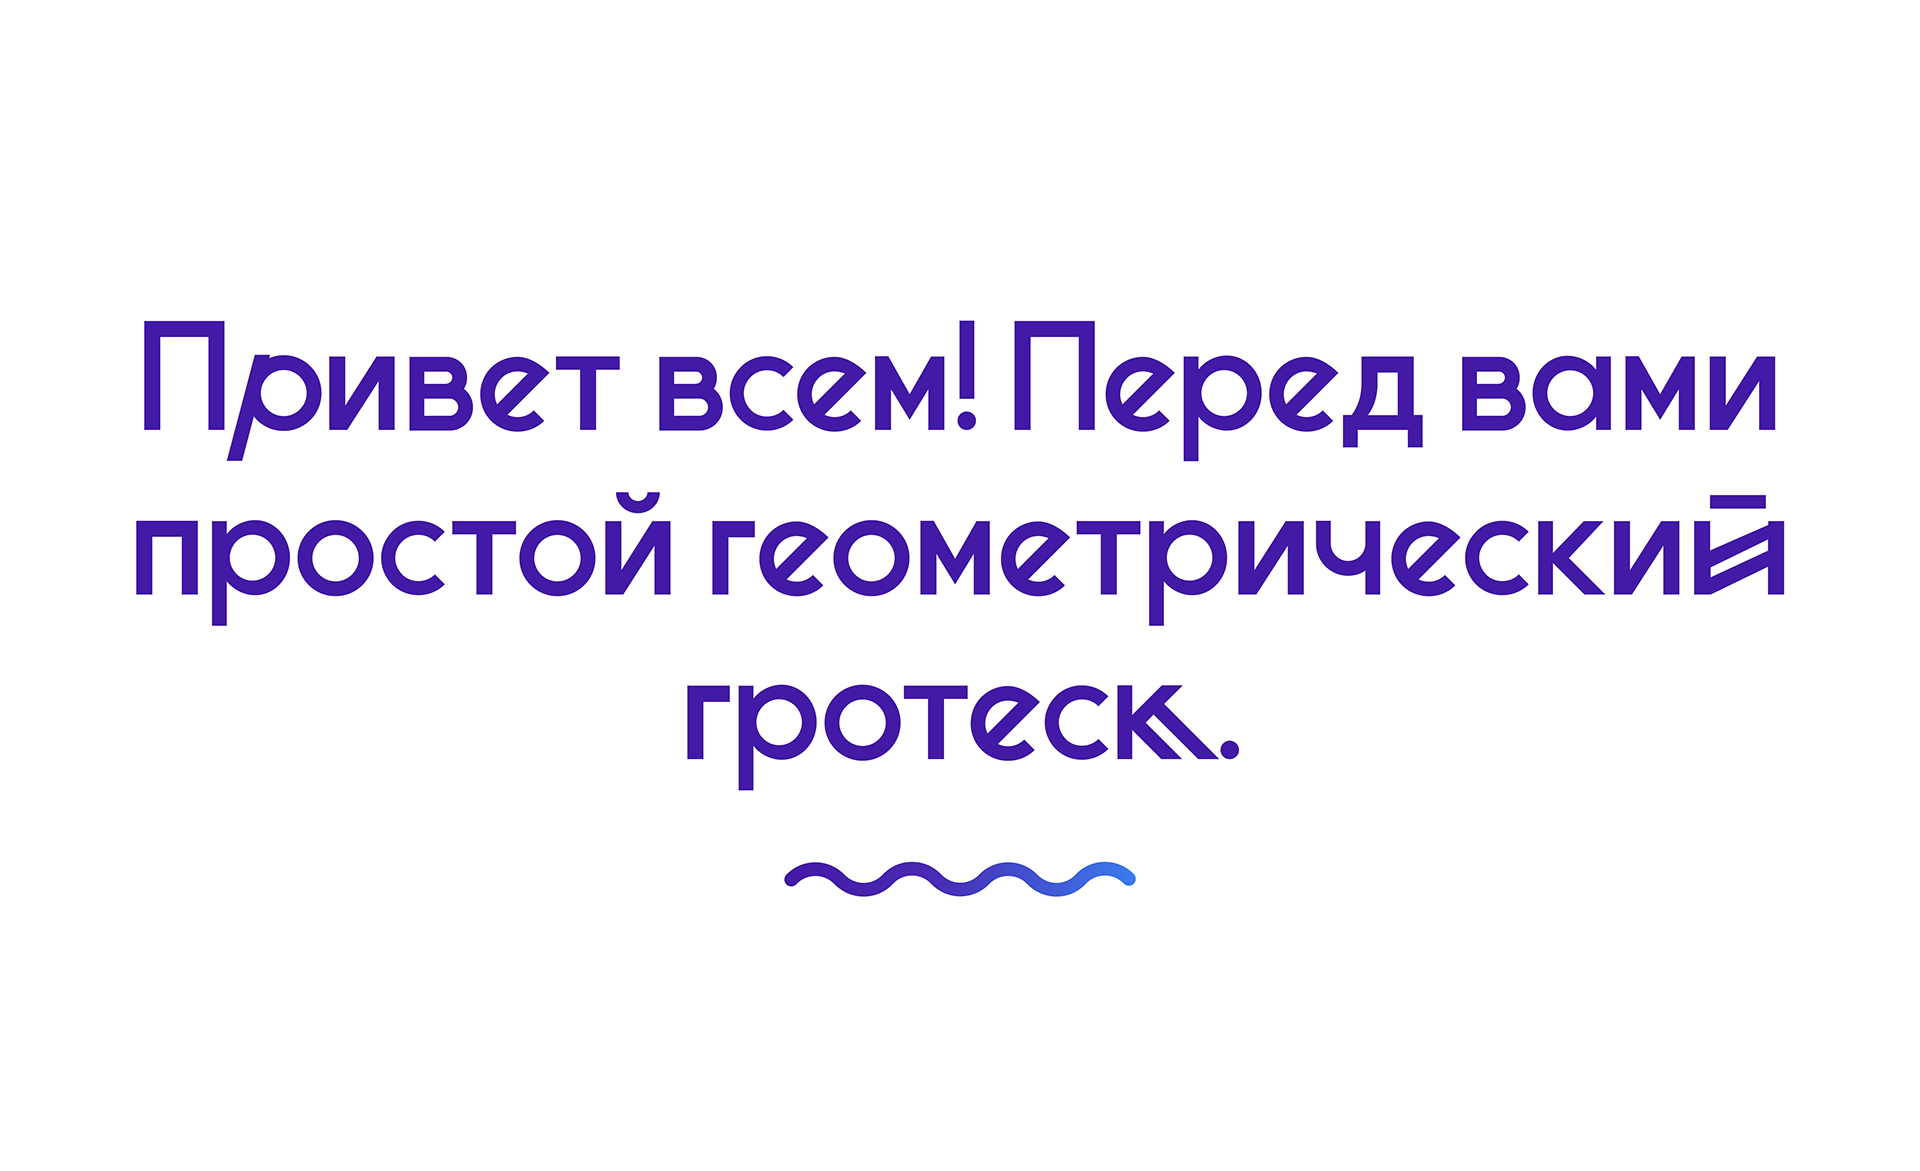 Пример шрифта Minsk #3